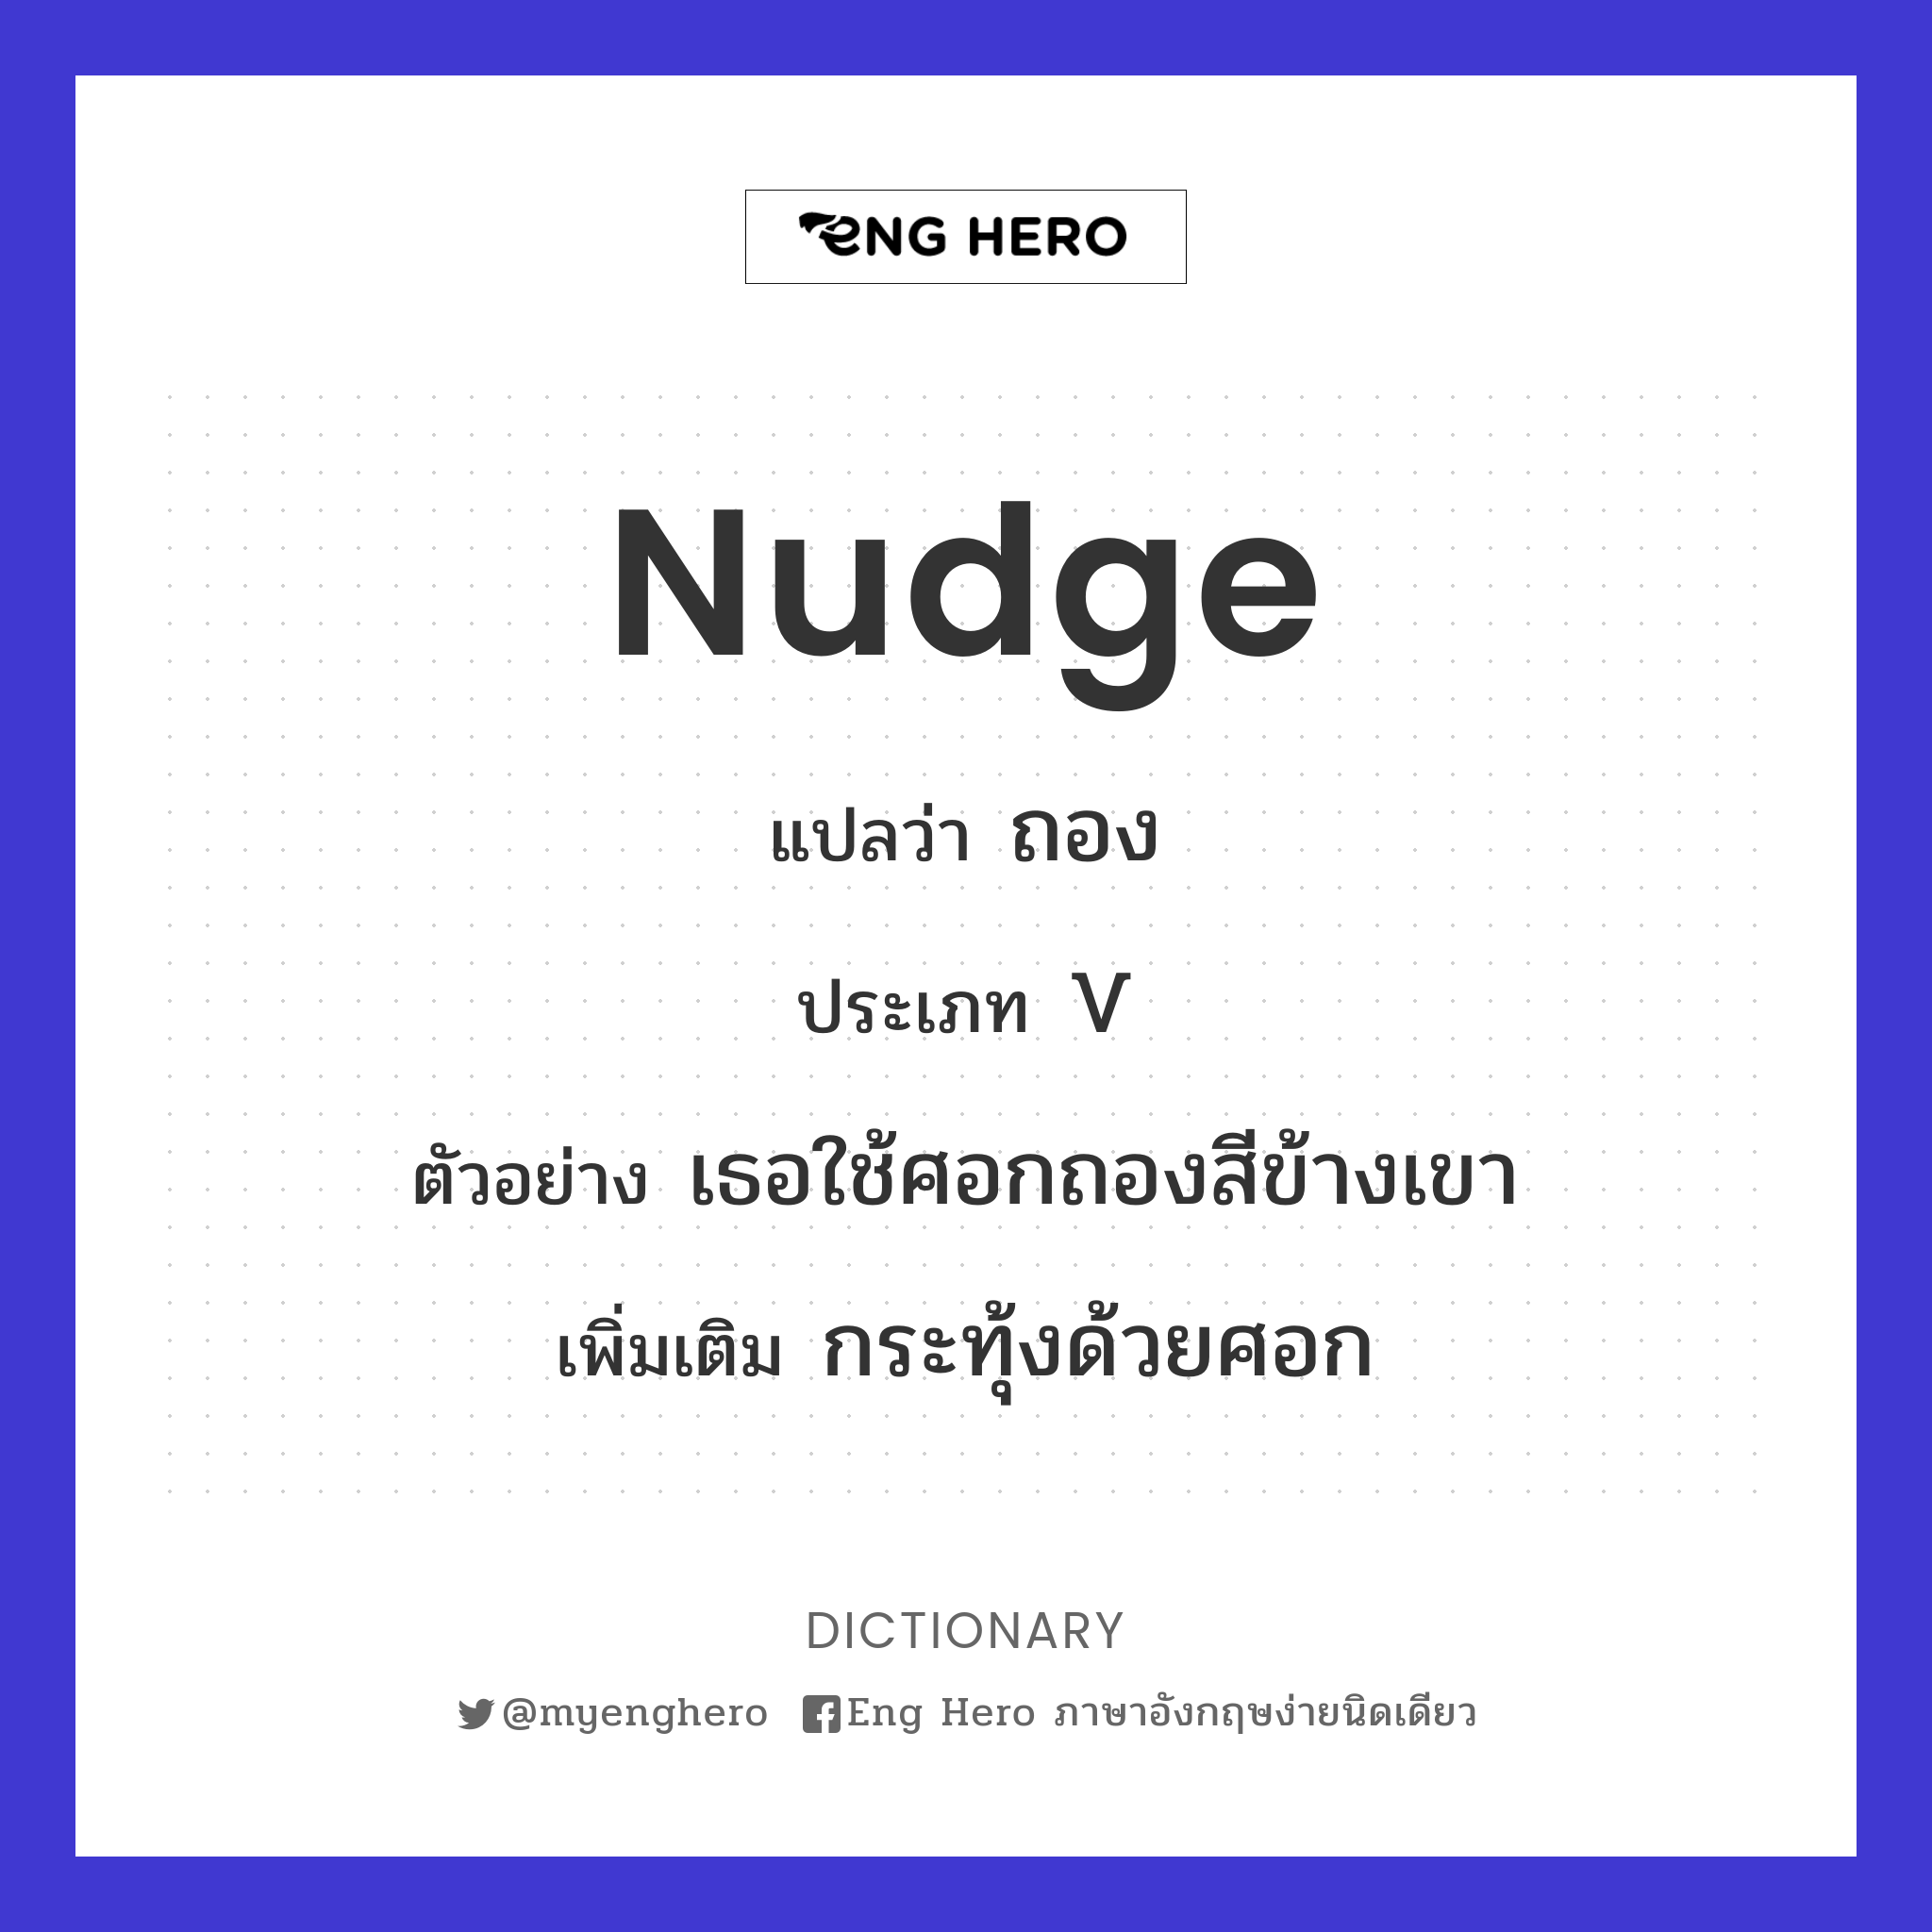 nudge